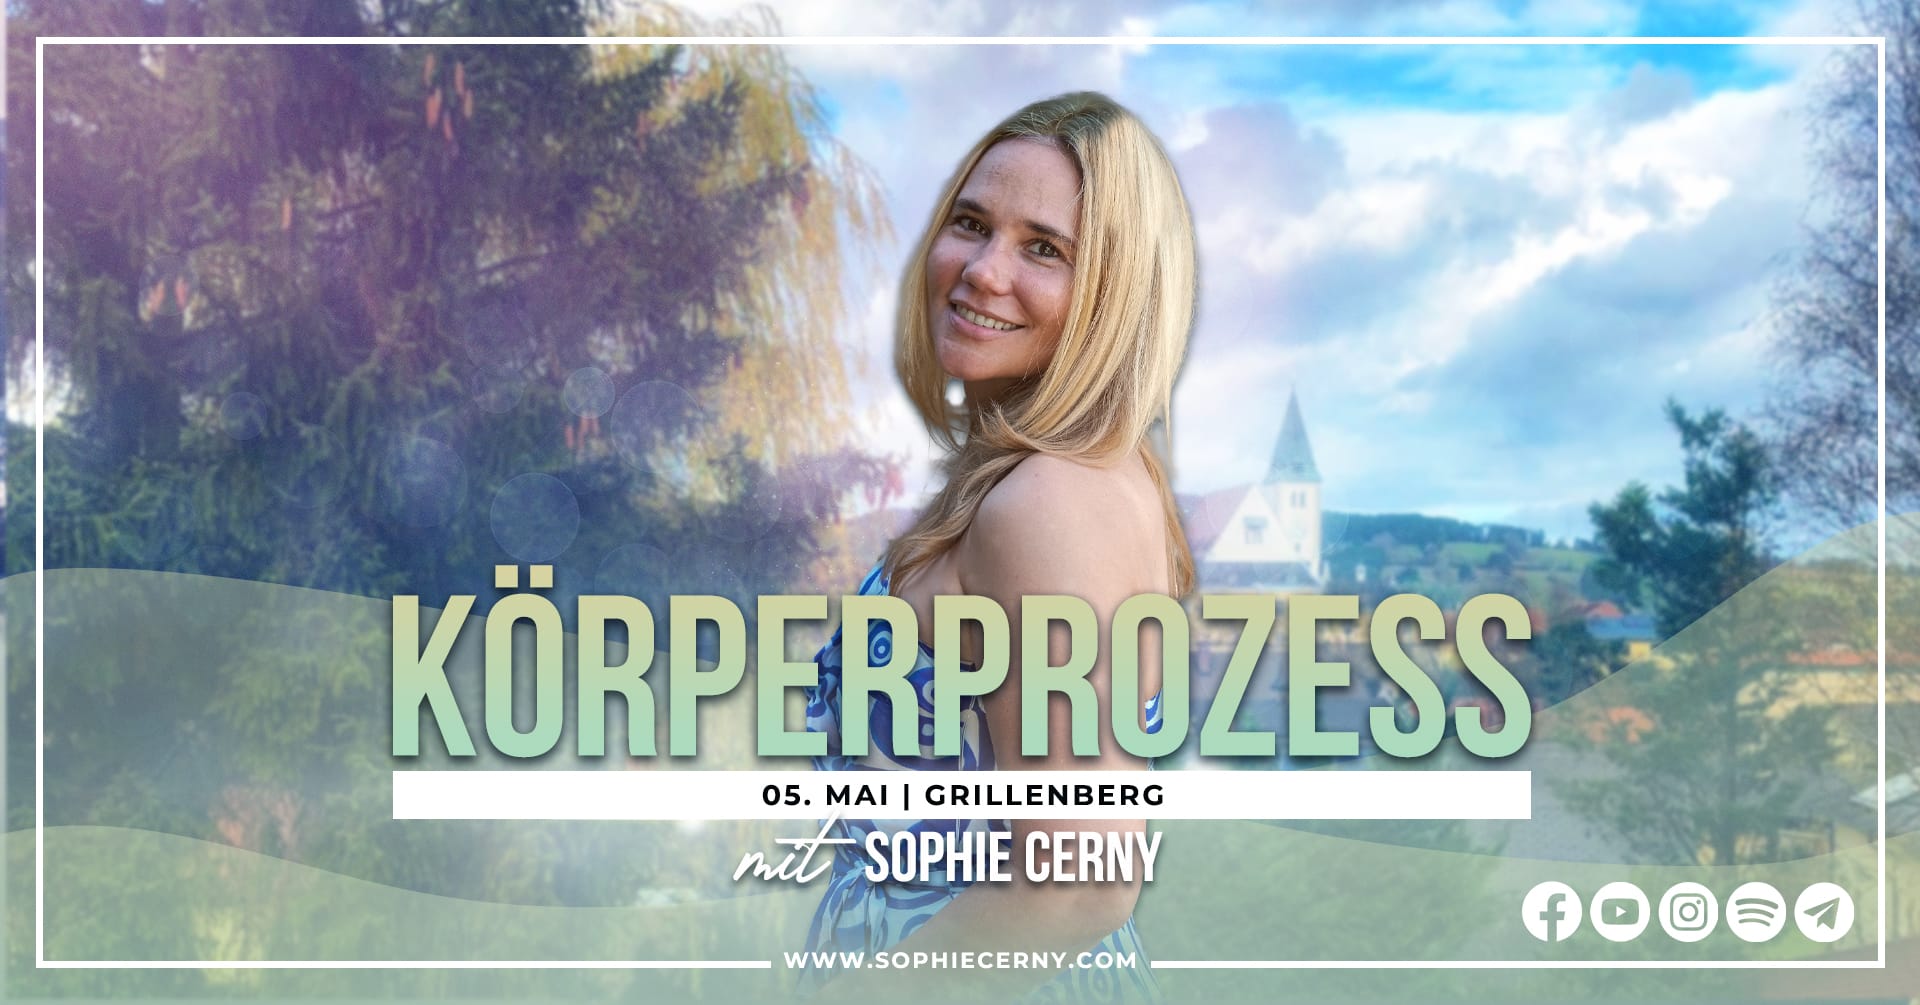 Access Körperprozess Grillenberg Sophie Cerny